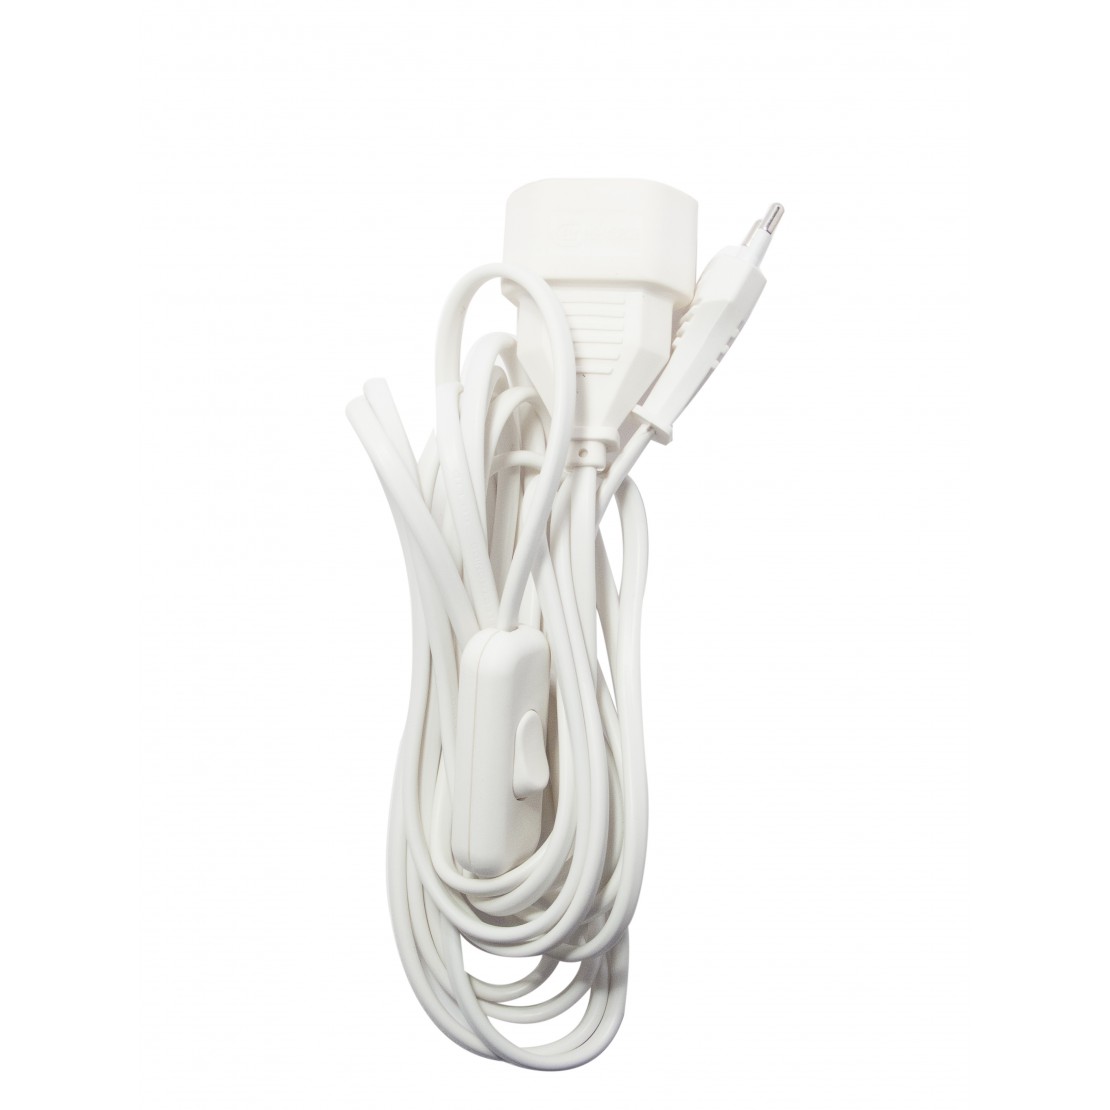 Rallonge 1,8M White aimant pratique Prise Interrupteur a Pied Adaptateur 